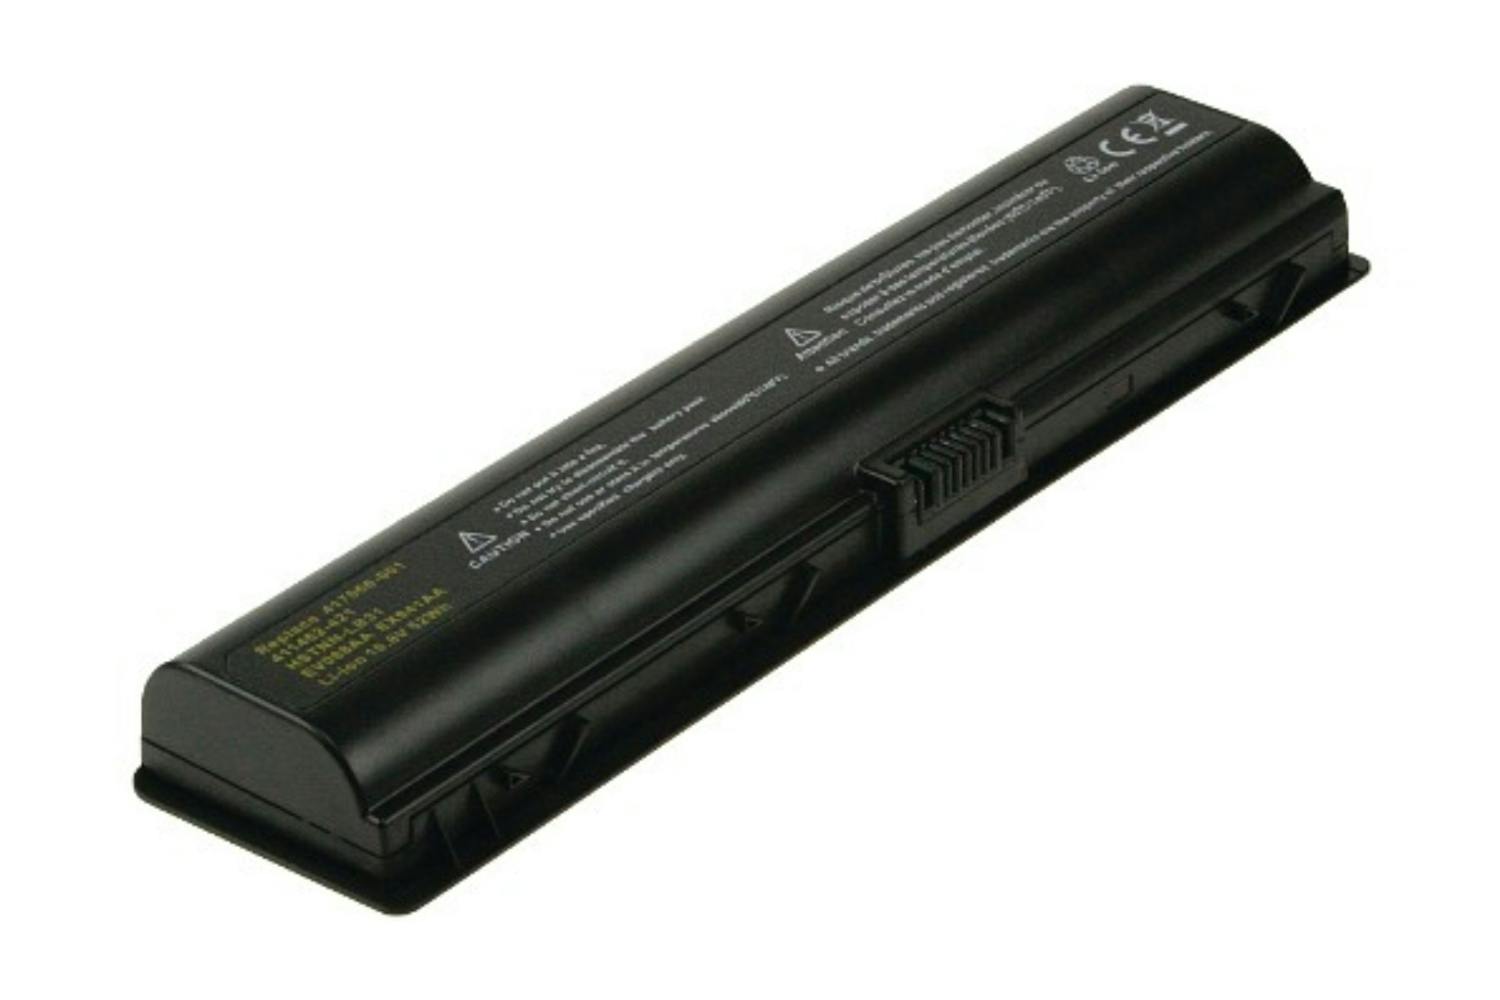 2-Power Main Battery Pack 10.8V 4600mAh